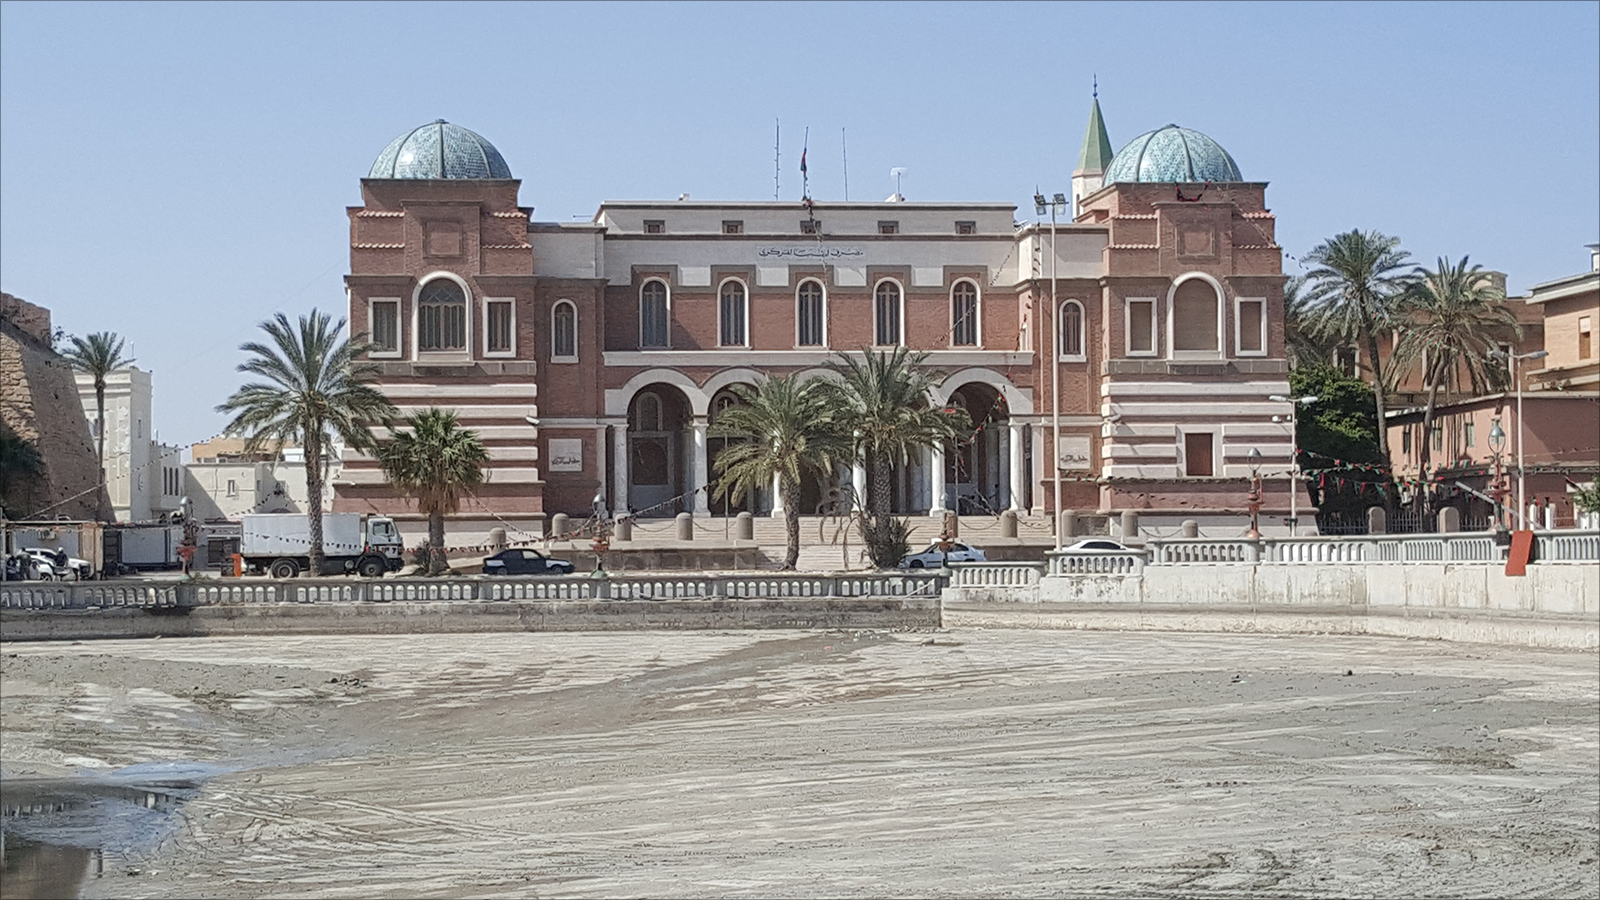 وفقا لخبراء وماليين فإن مصرف ليبيا المركزي يتحمل جزءا كبيرا من المسؤولية عن نقص السيولة (الجزيرة)